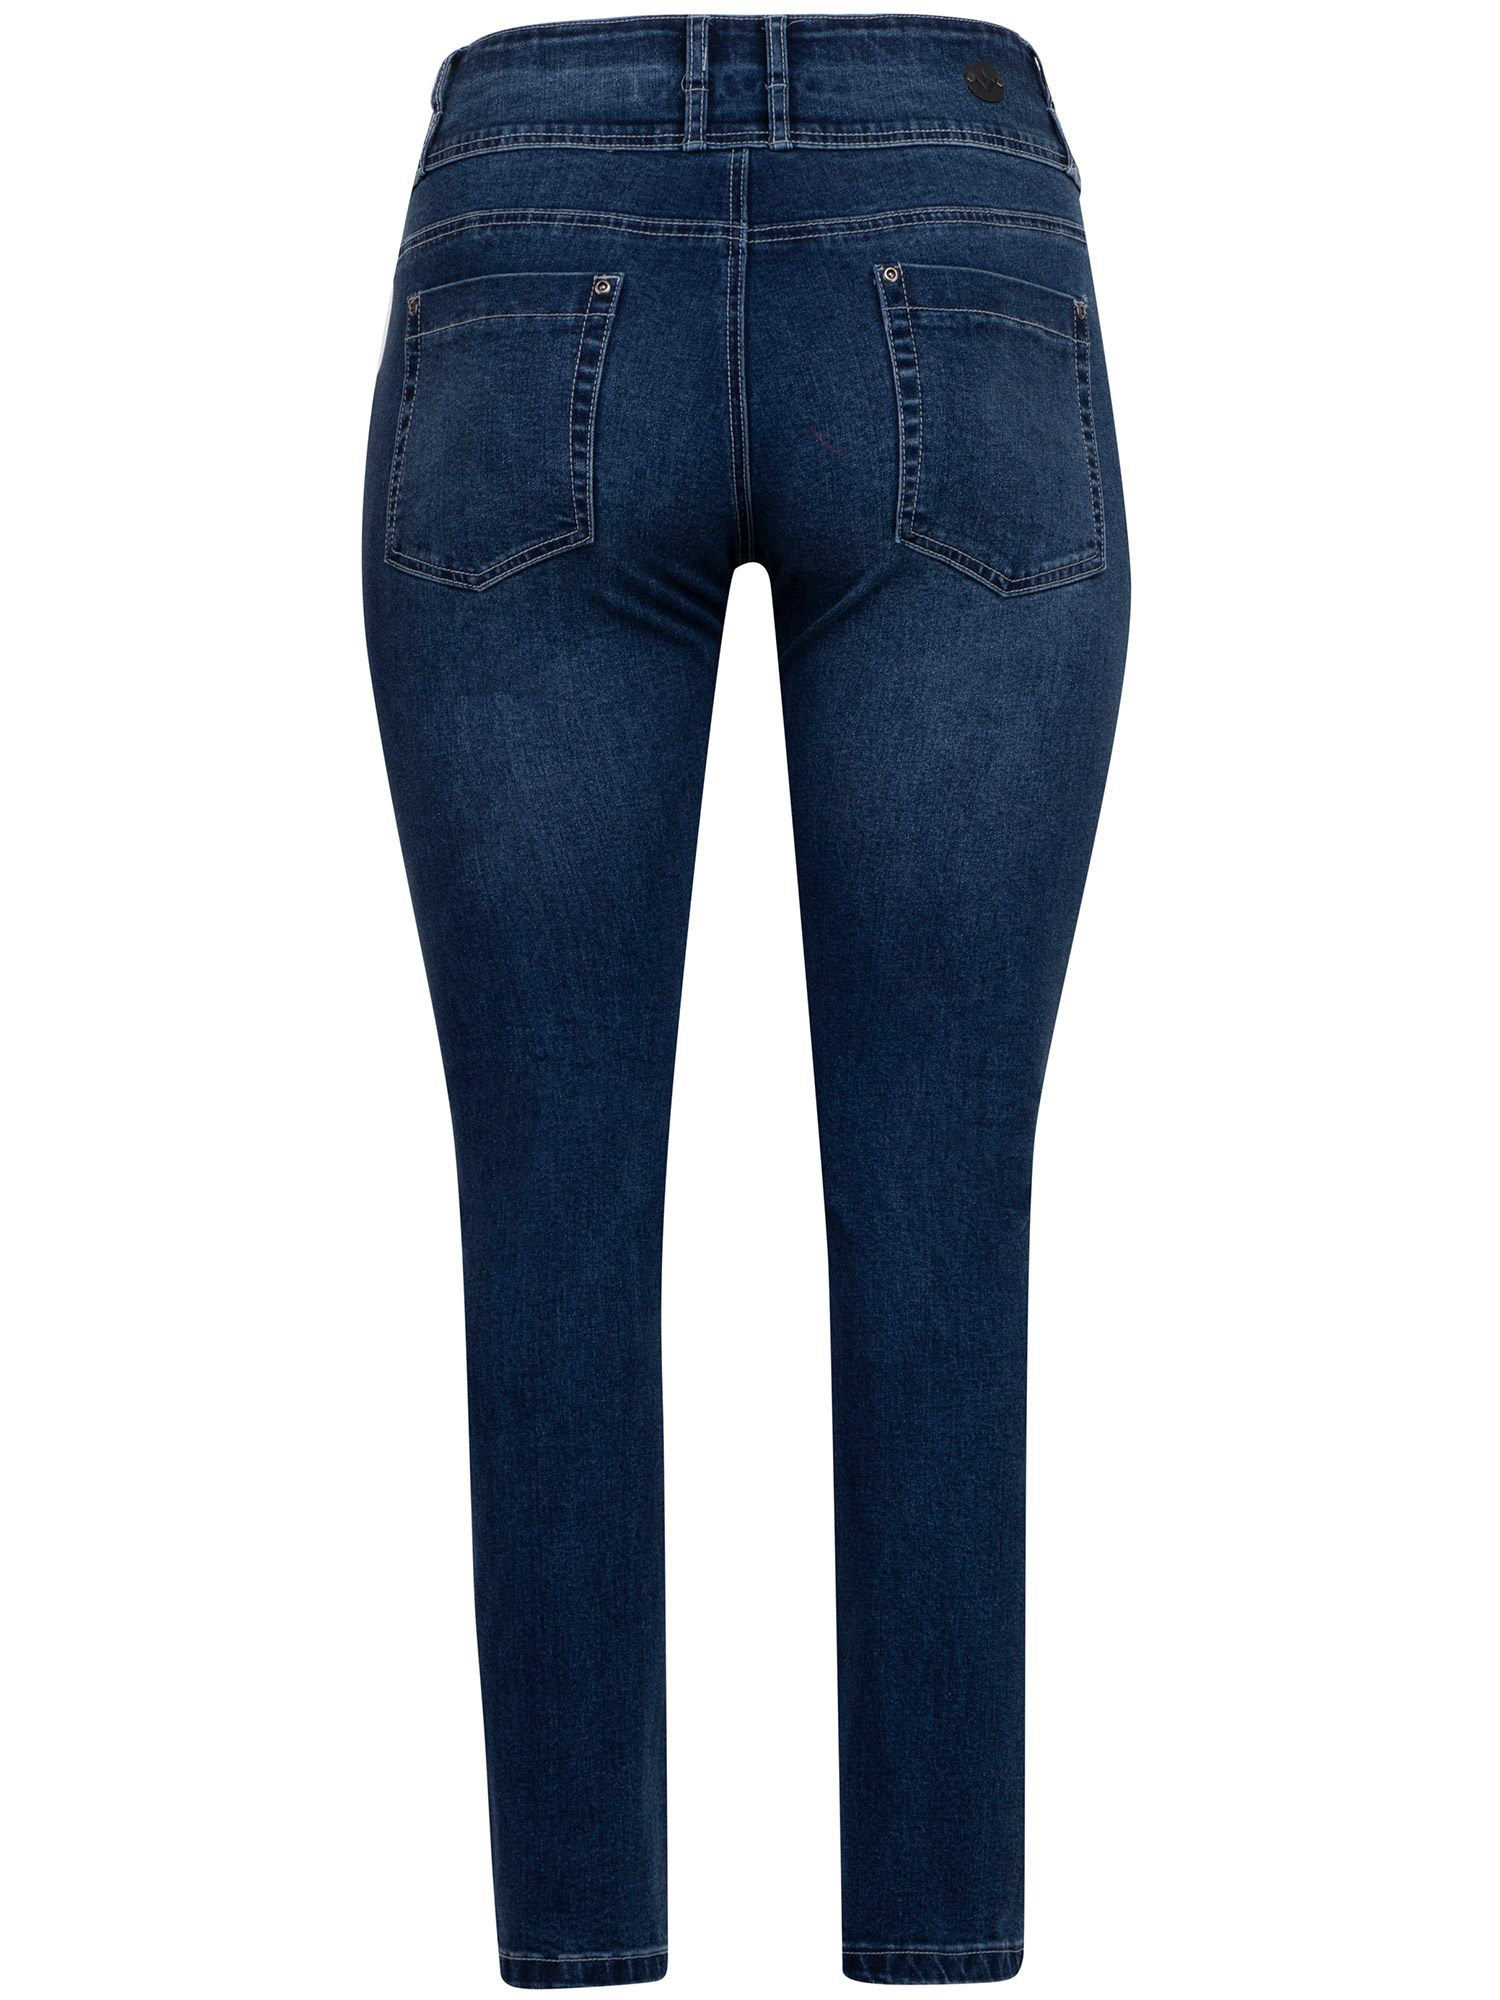 ROME - Blå skrækbar jeans med bred linning fra Adia